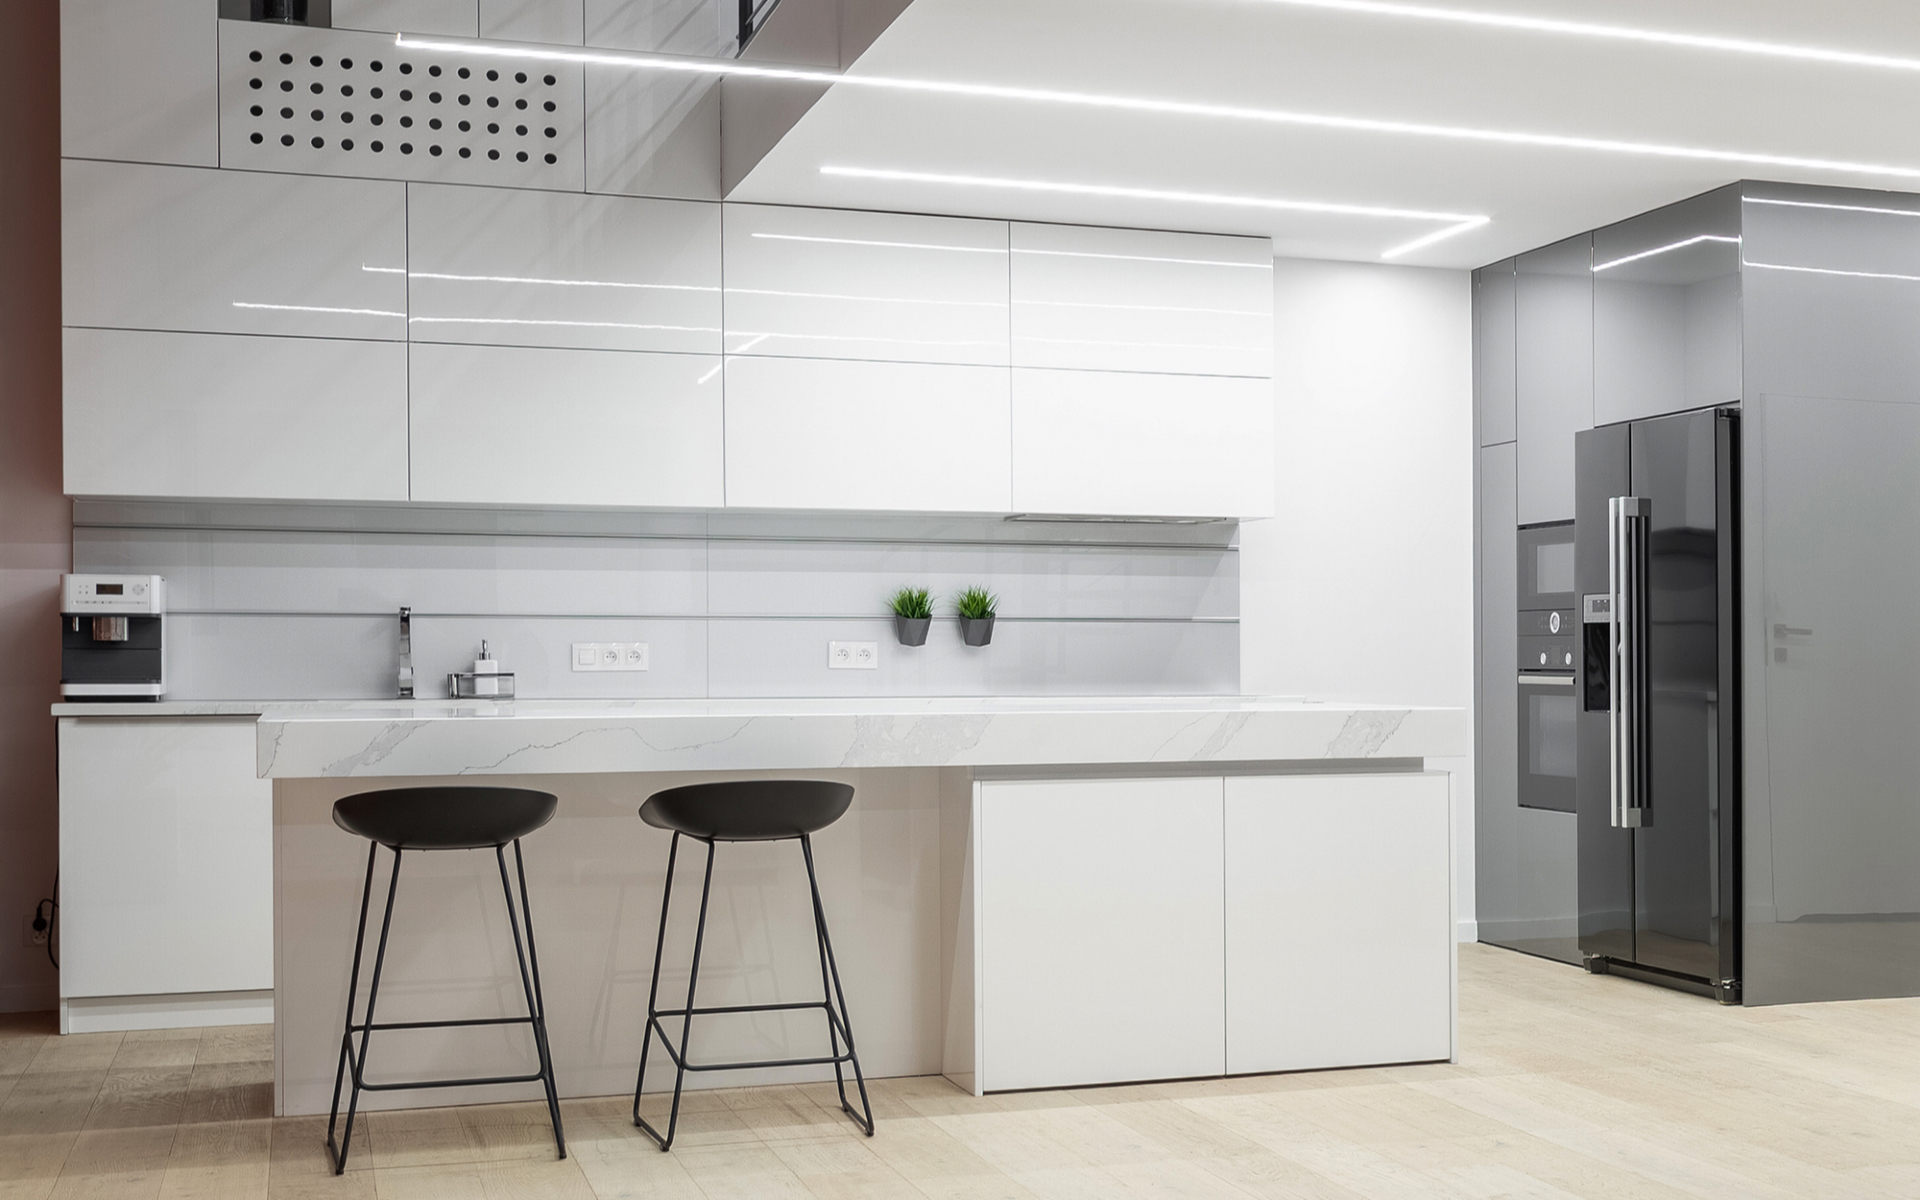 Дизайн потолка на кухне: 30 самых красивых идей для вашего интерьера